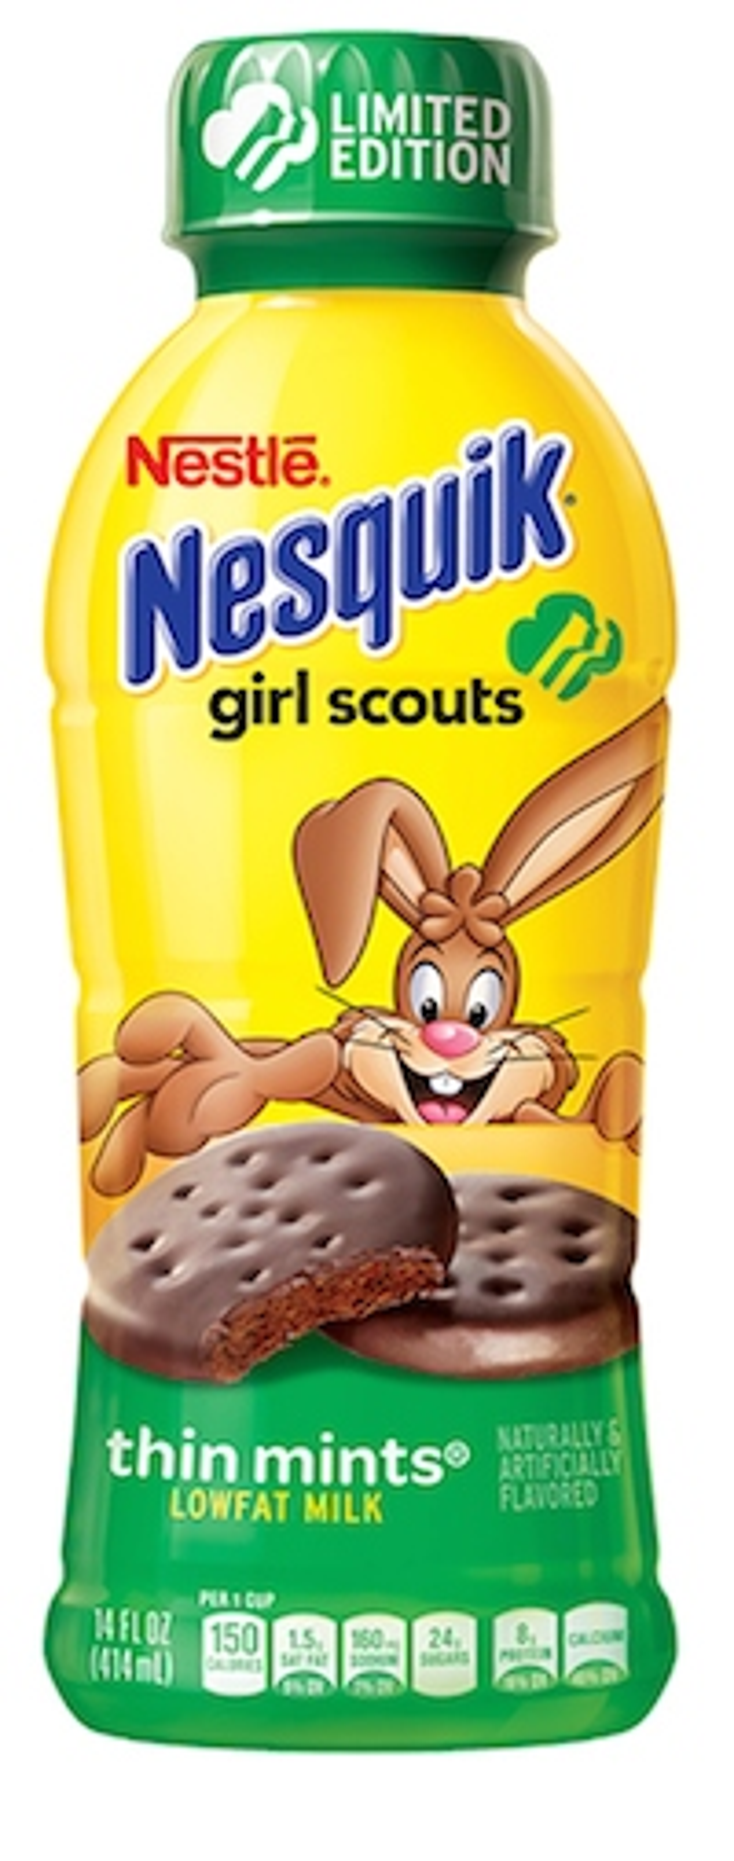 Nesquik Adds Girl Scouts Flavors